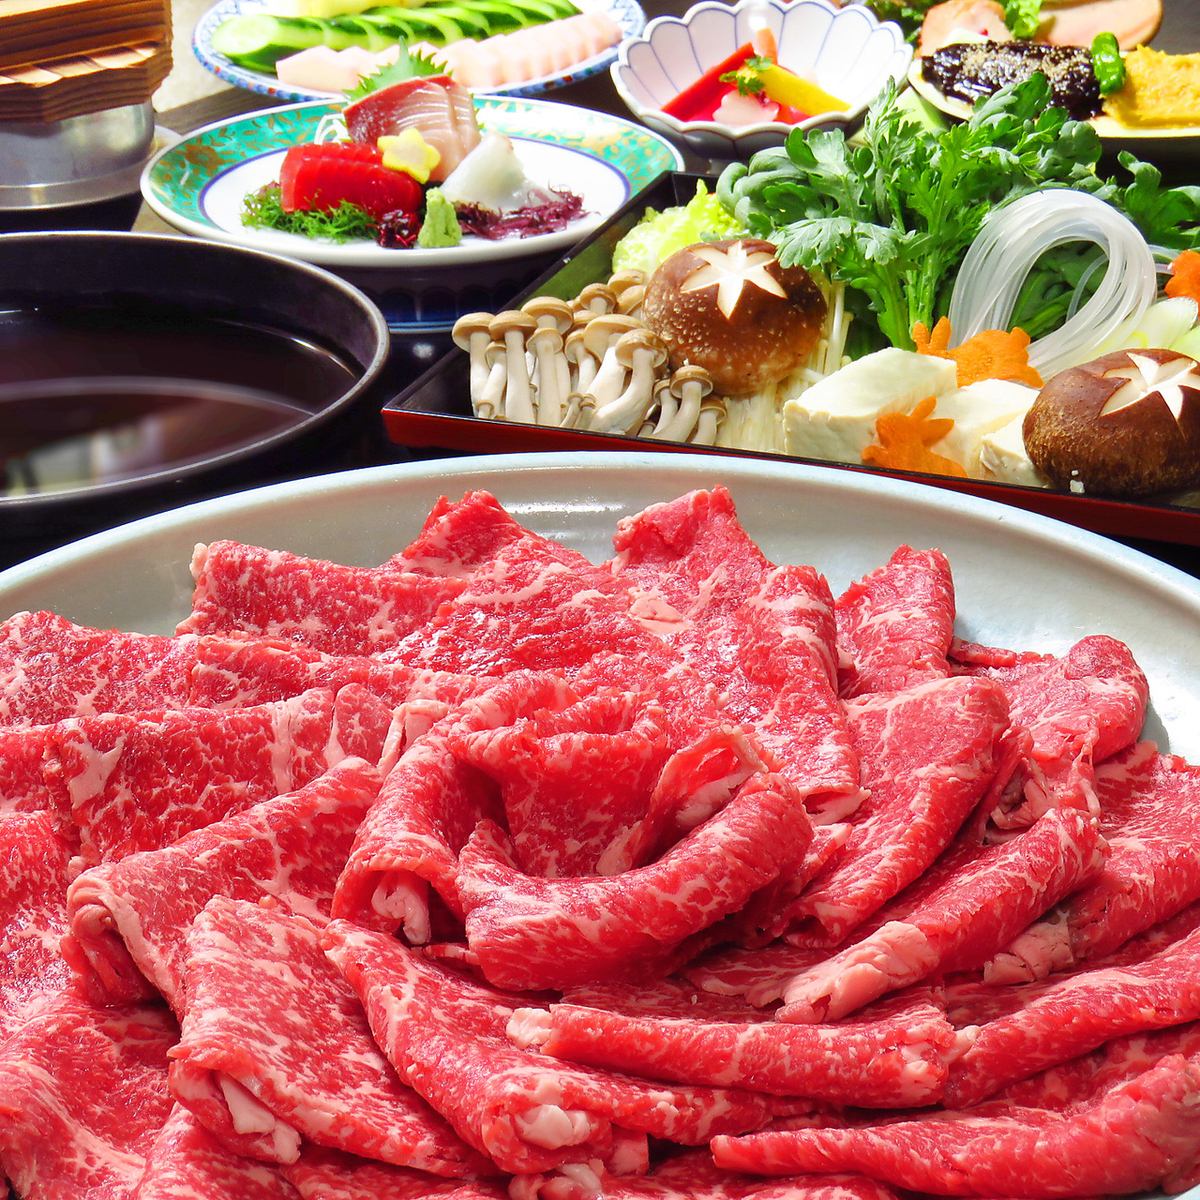 Unme牛肉涮锅或寿喜烧套餐2.5小时无限畅饮6,000日元